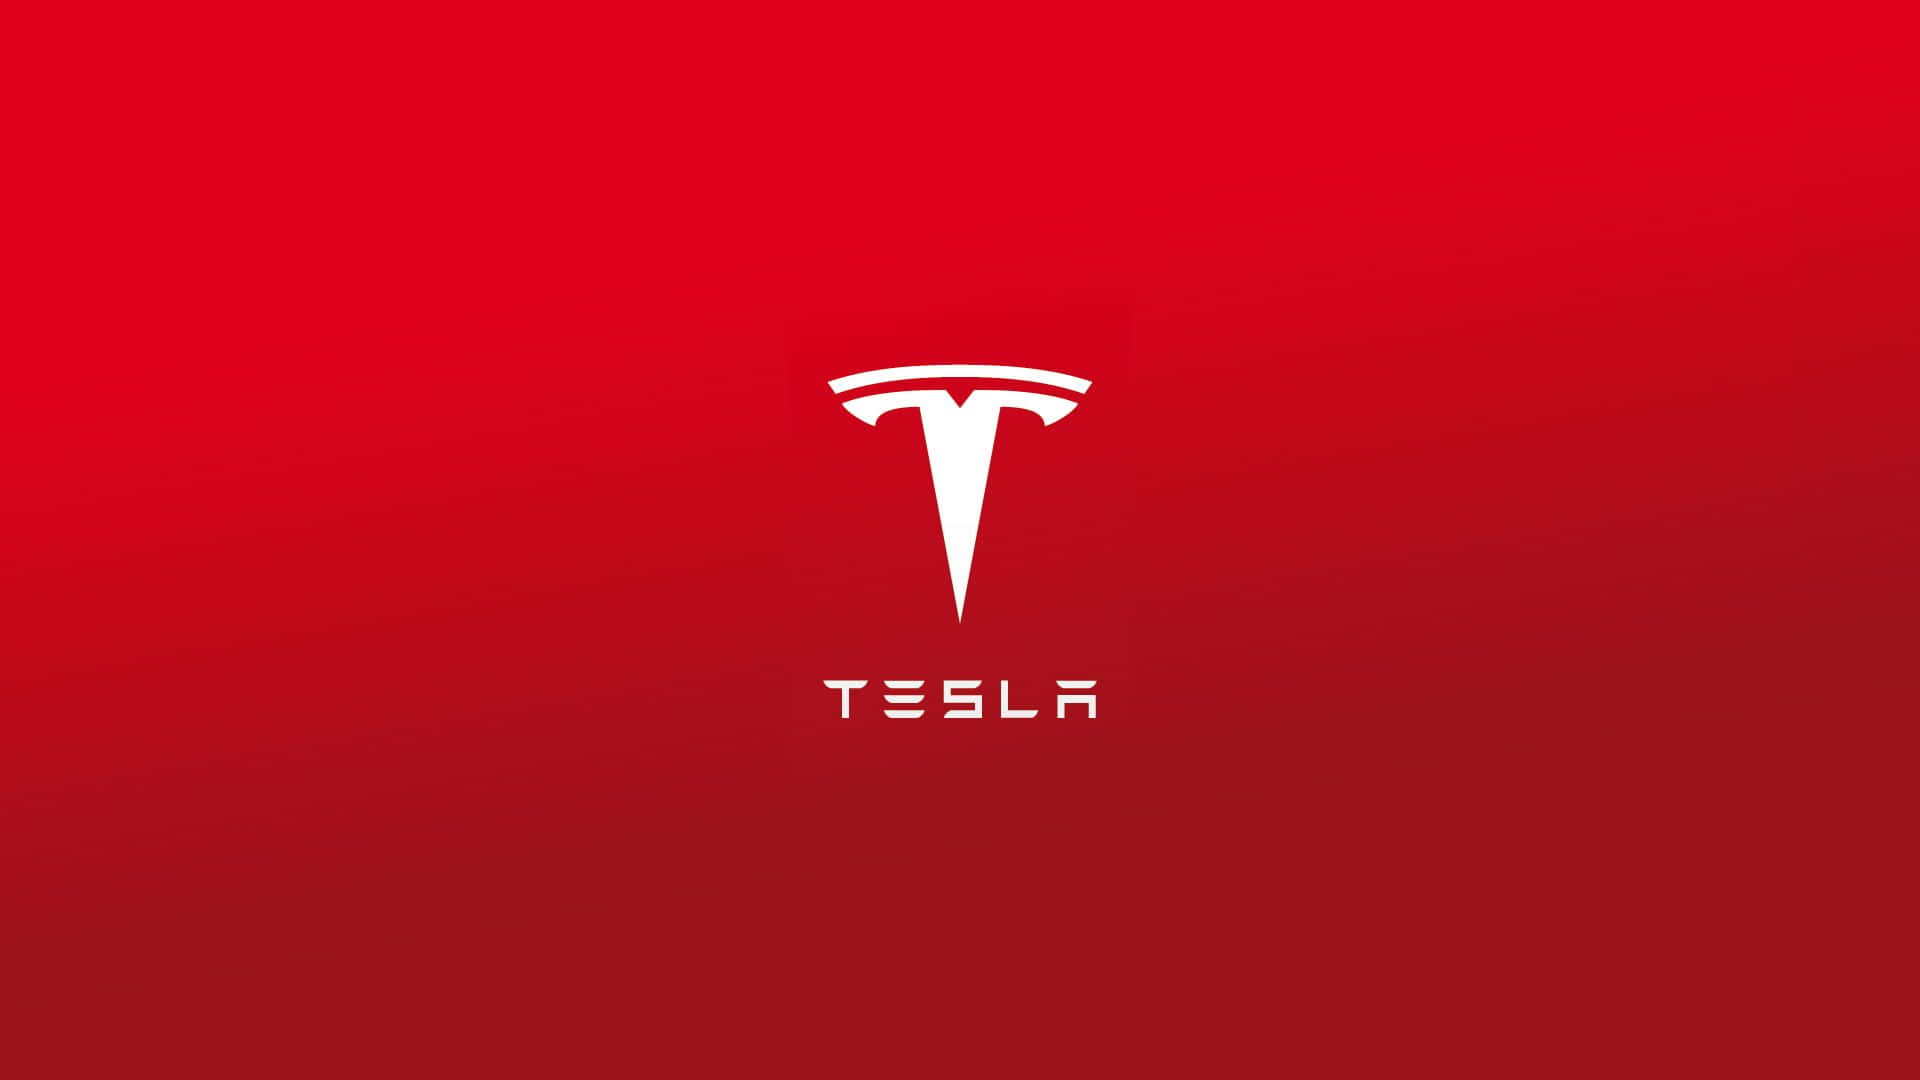 Teslafans Fejrer Fremtiden For Elektriske Køretøjer.